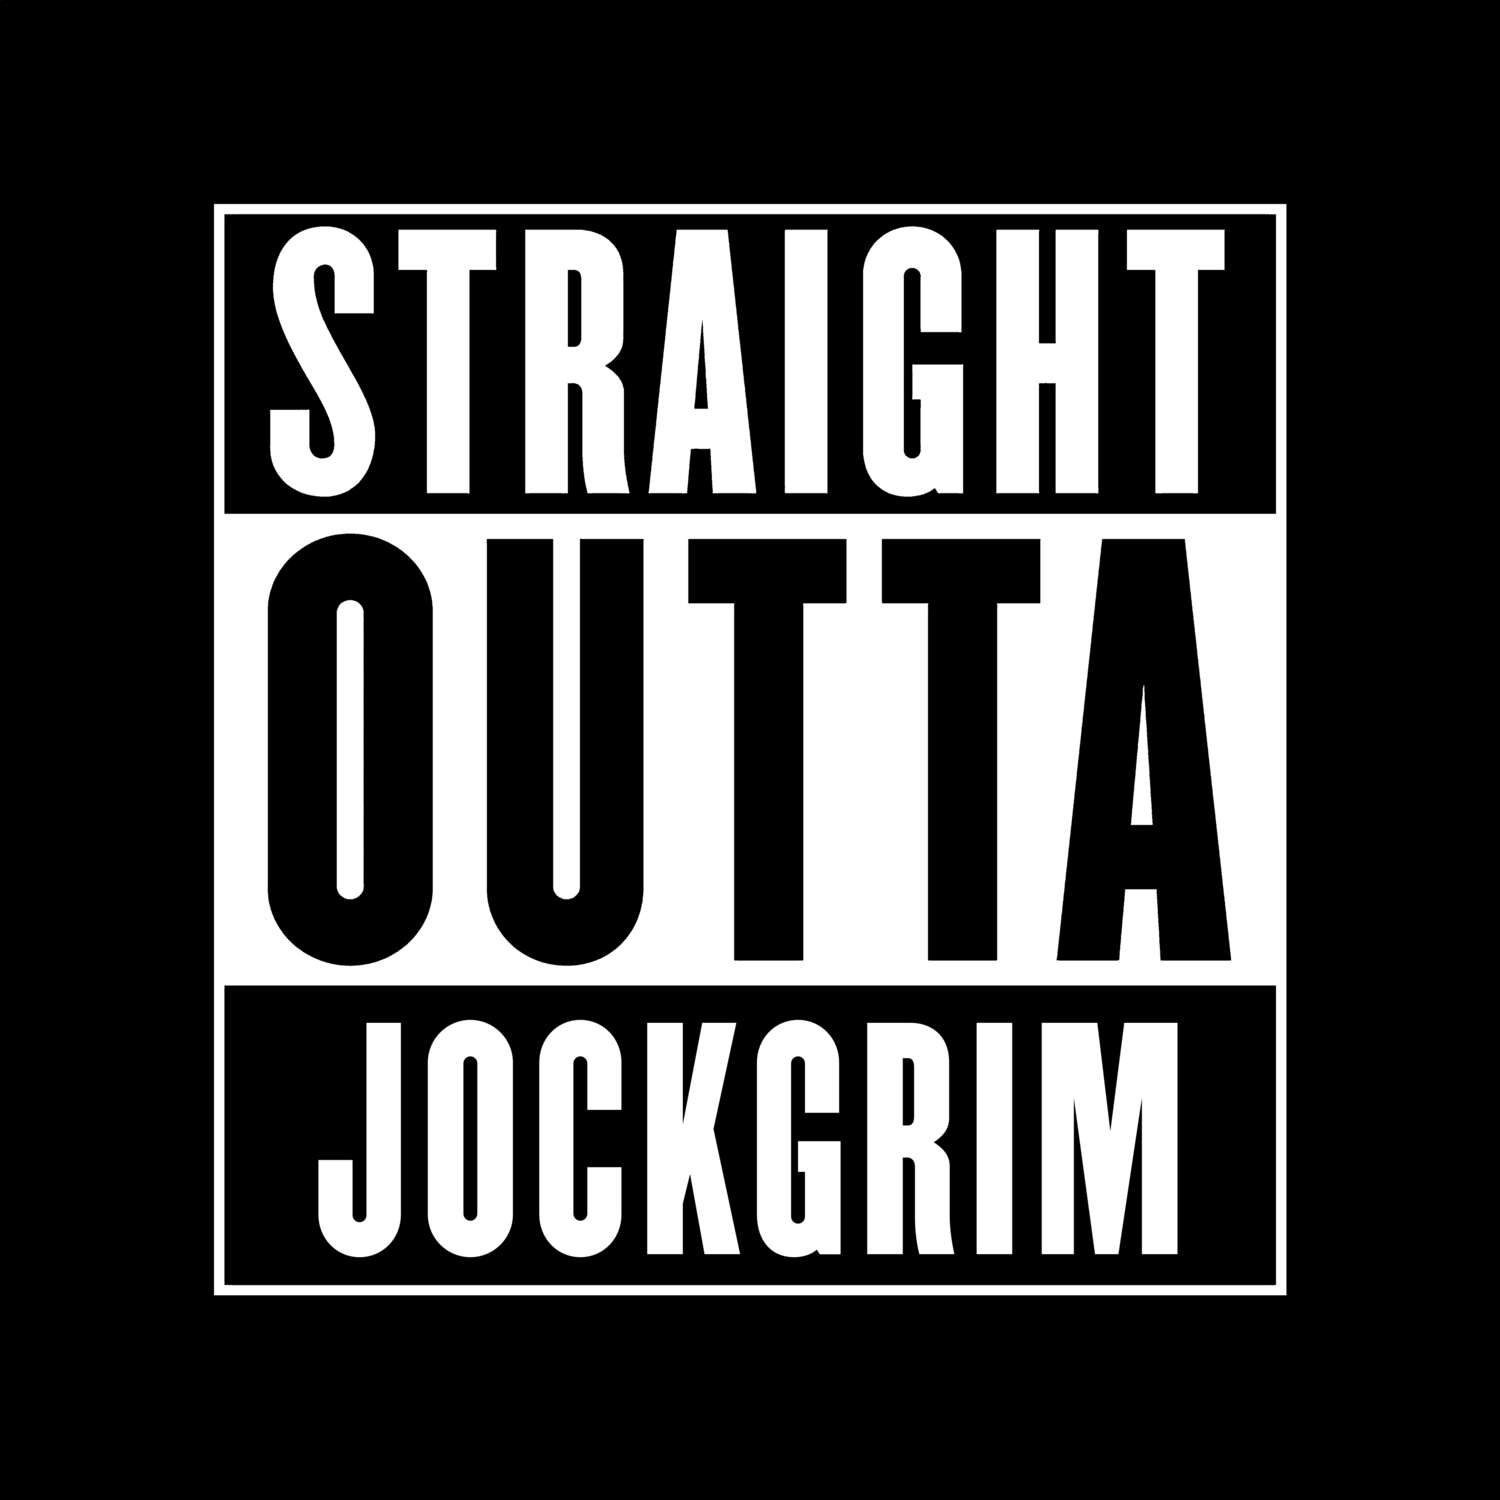 Jockgrim T-Shirt »Straight Outta«